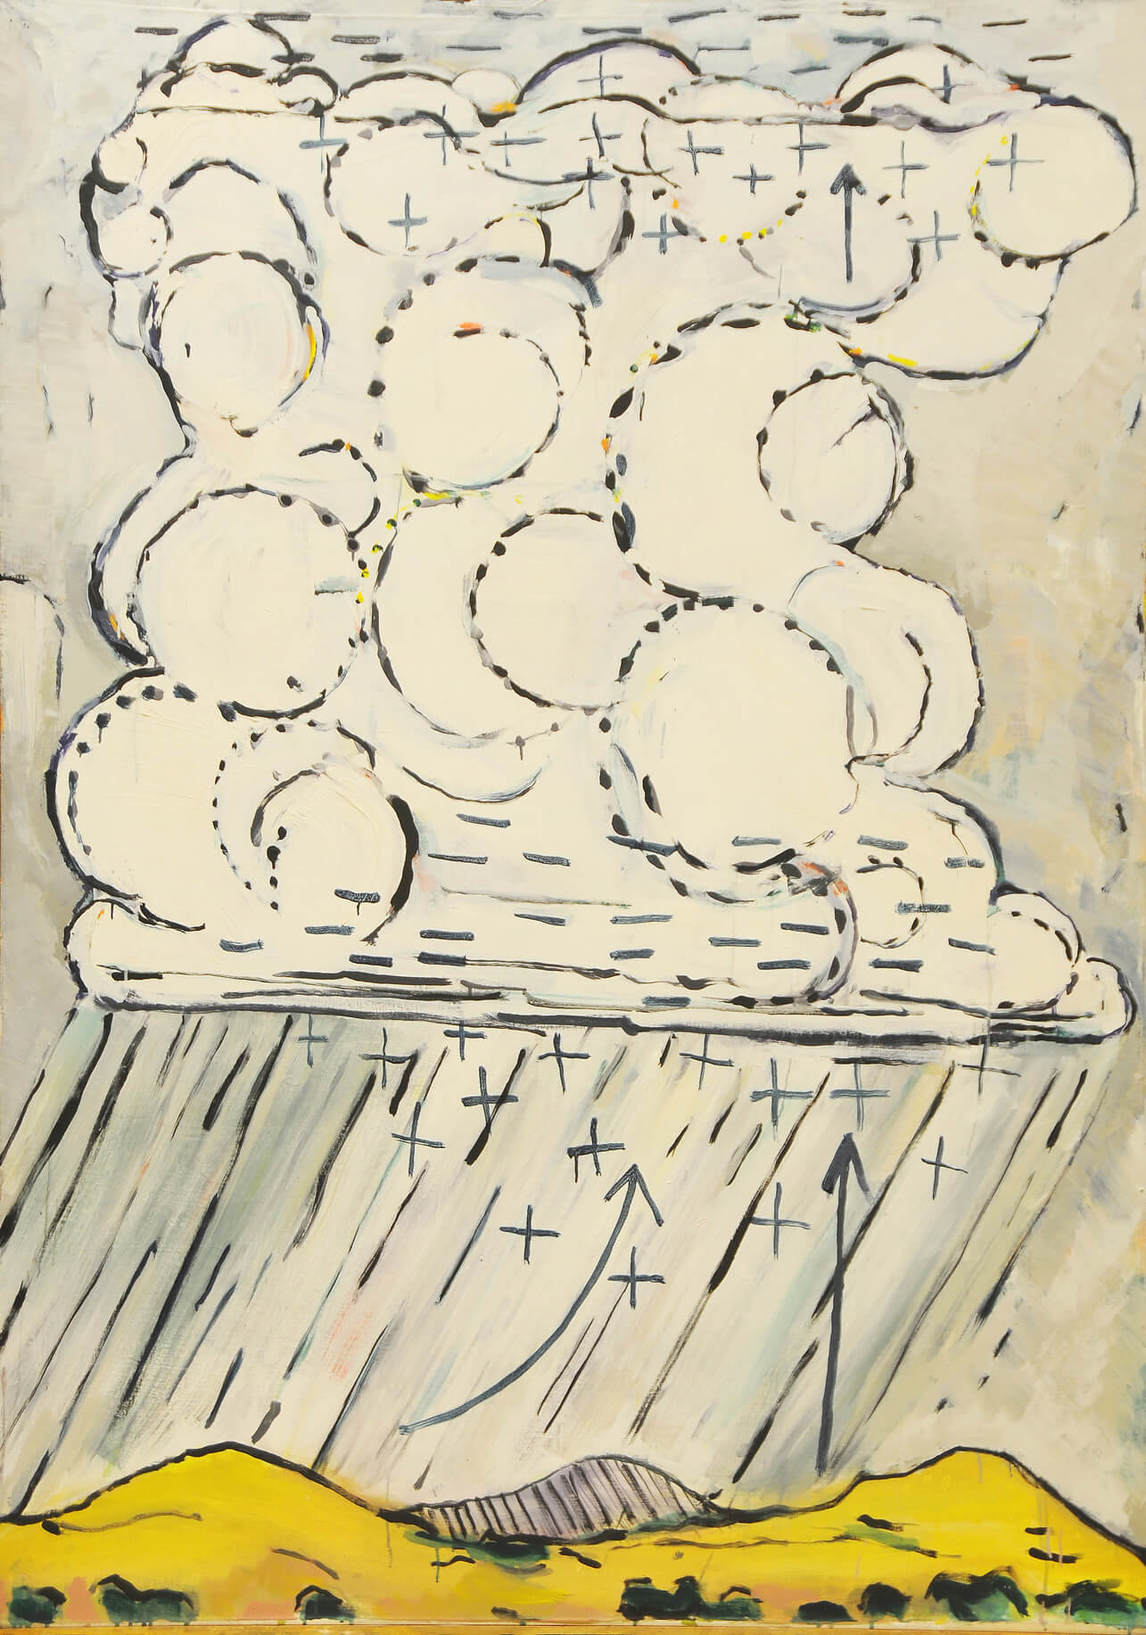 Nuage orageux comme générateur #1, 1971, par Paterson Ewen